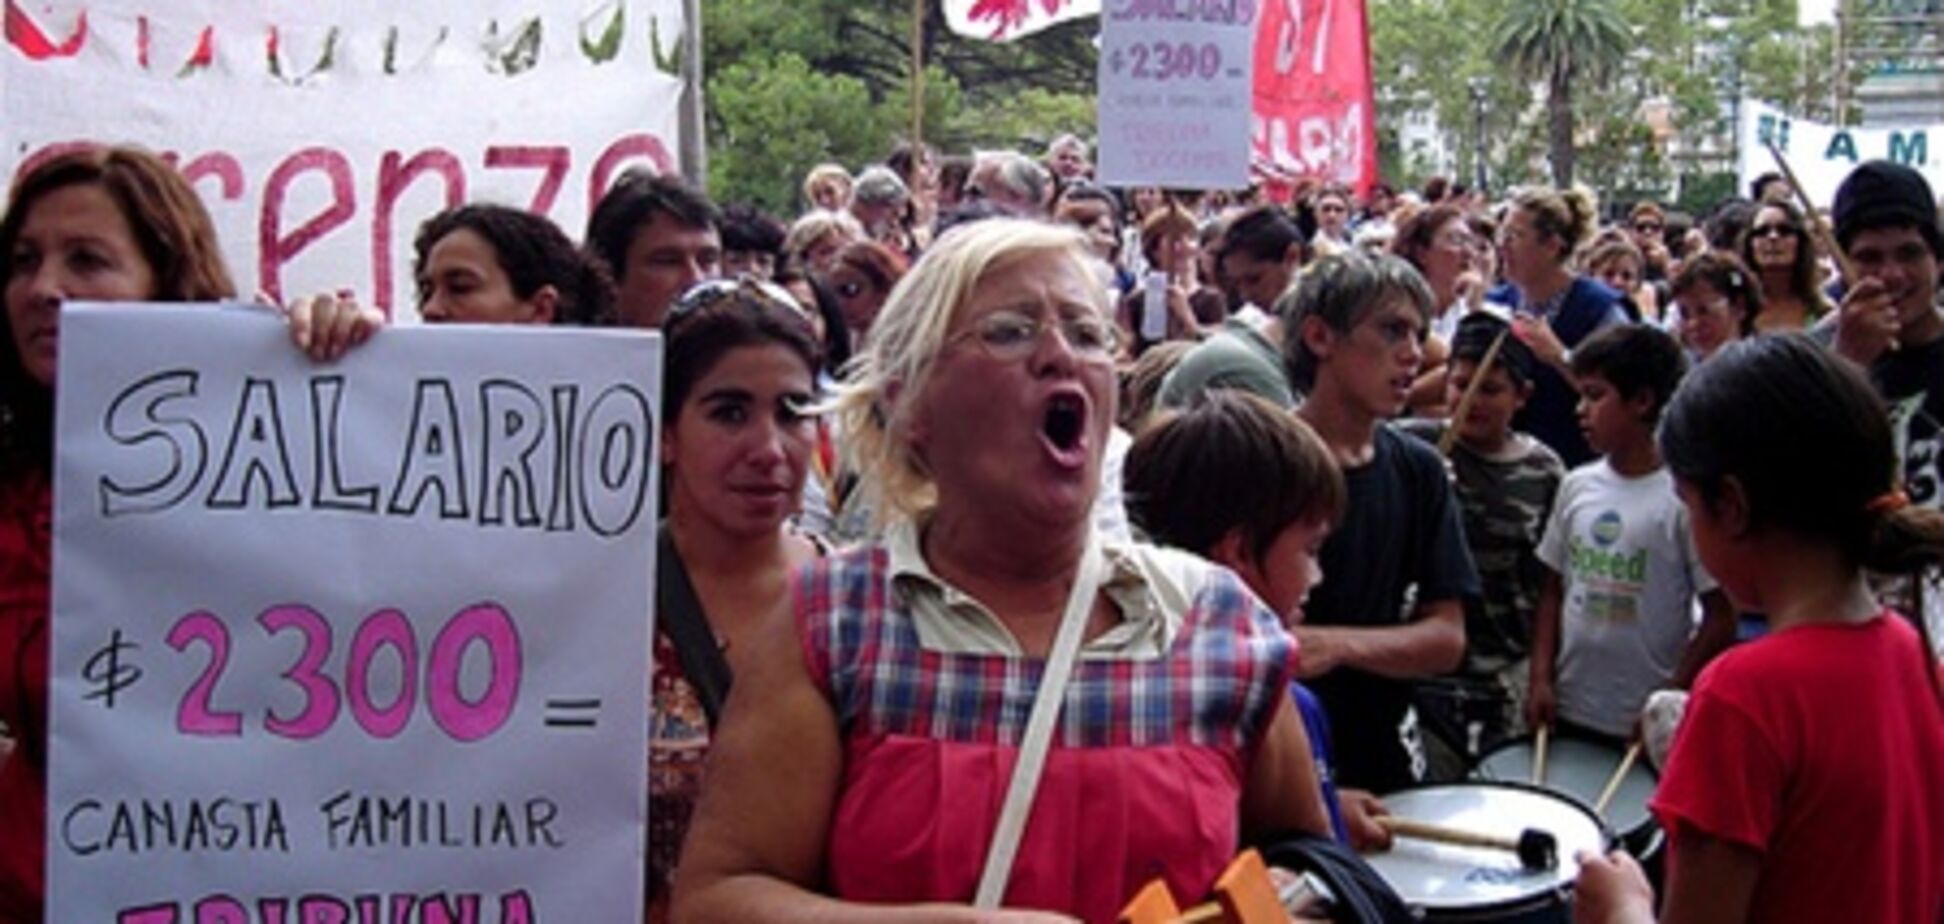 Страйк вчителів зірвала початок навчального року в Аргентині